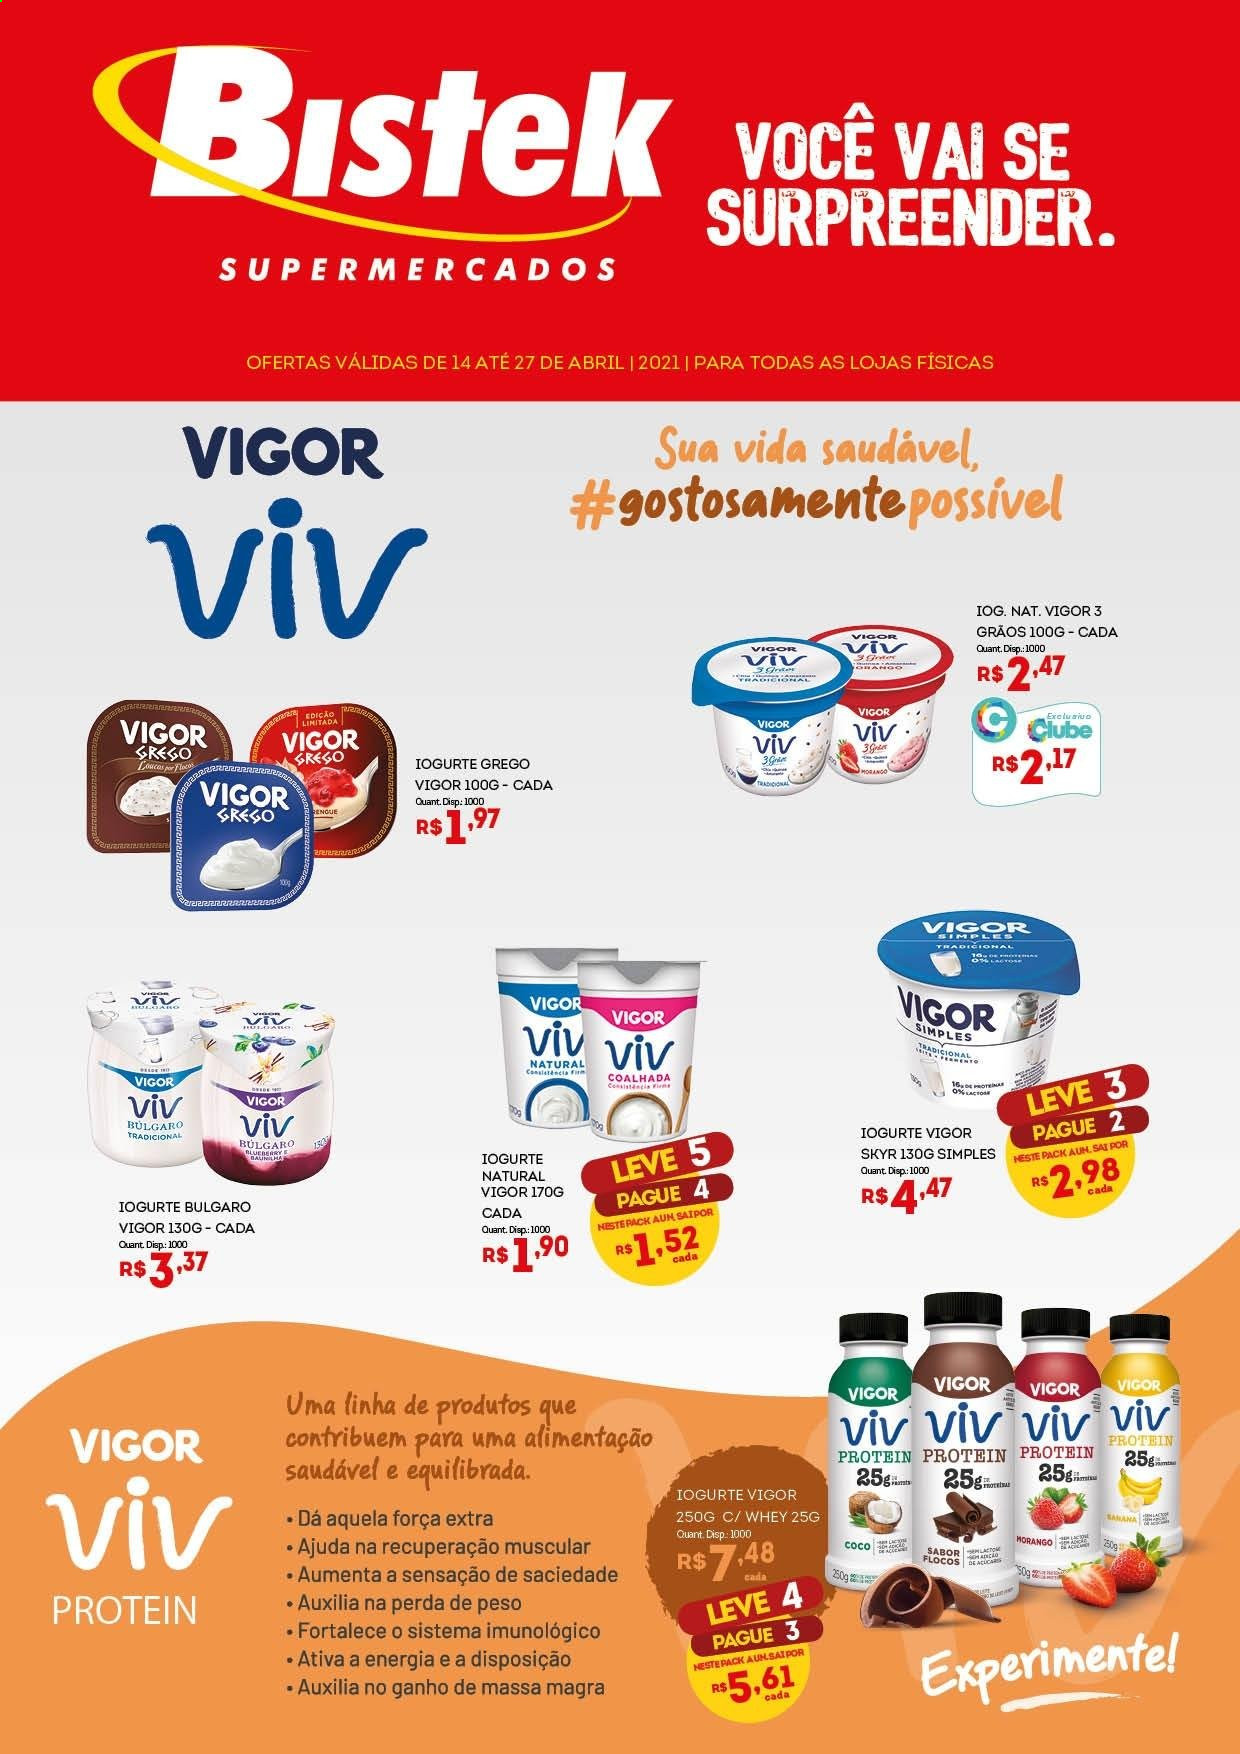 thumbnail - Folheto Bistek Supermercados - 14/04/2021 - 27/04/2021 - Produtos em promoção - iogurte, iogurte grego, flocos, coco, rack, Vigor. Página 1.